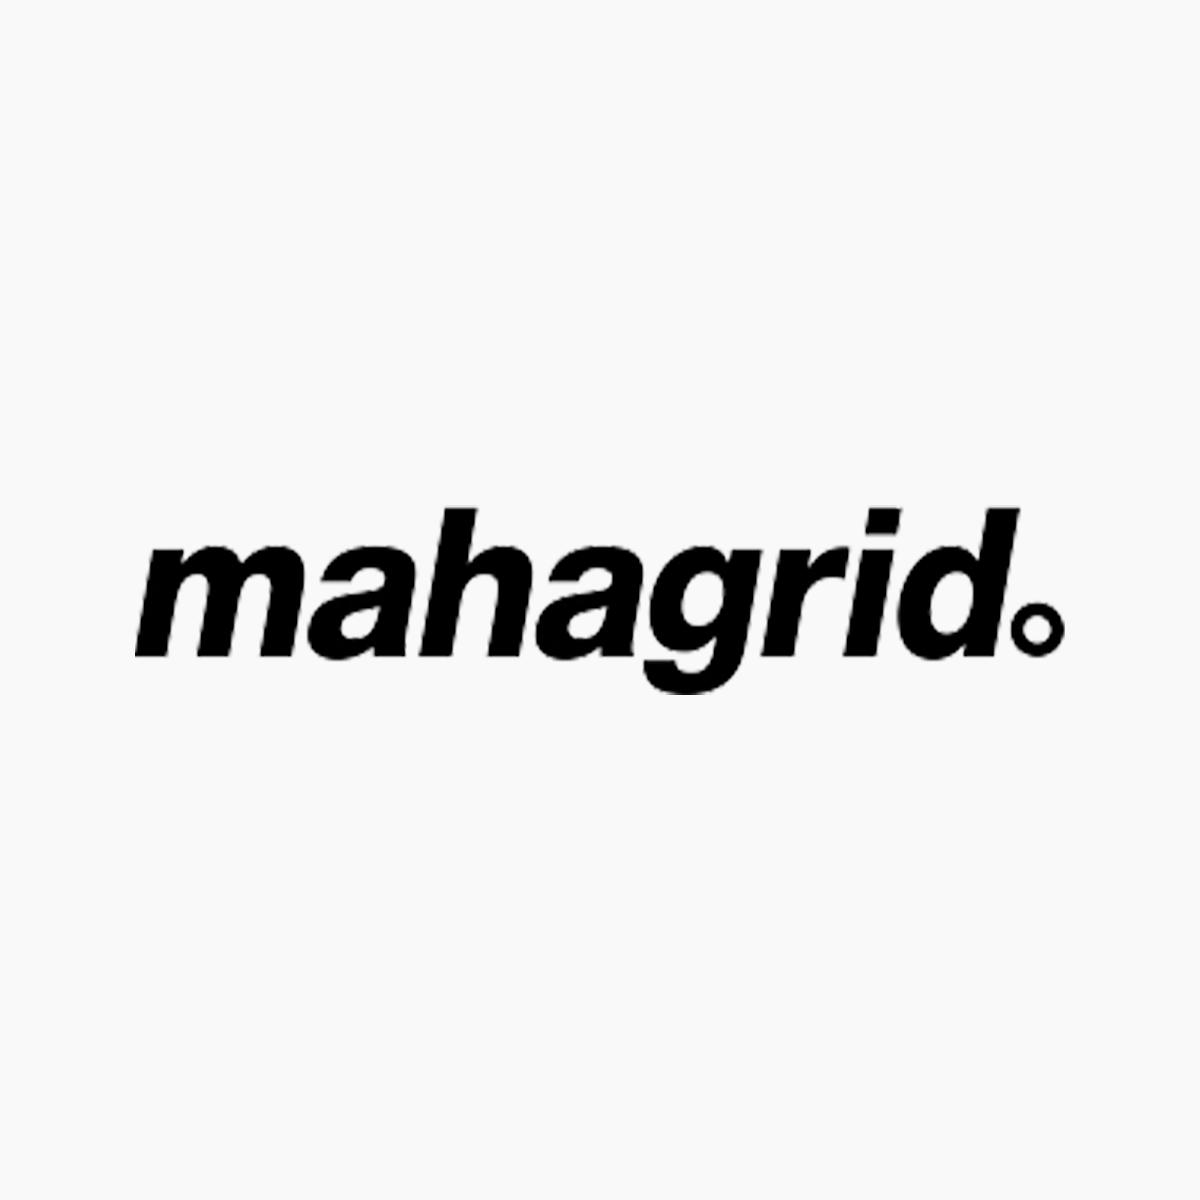 MAHAGRID